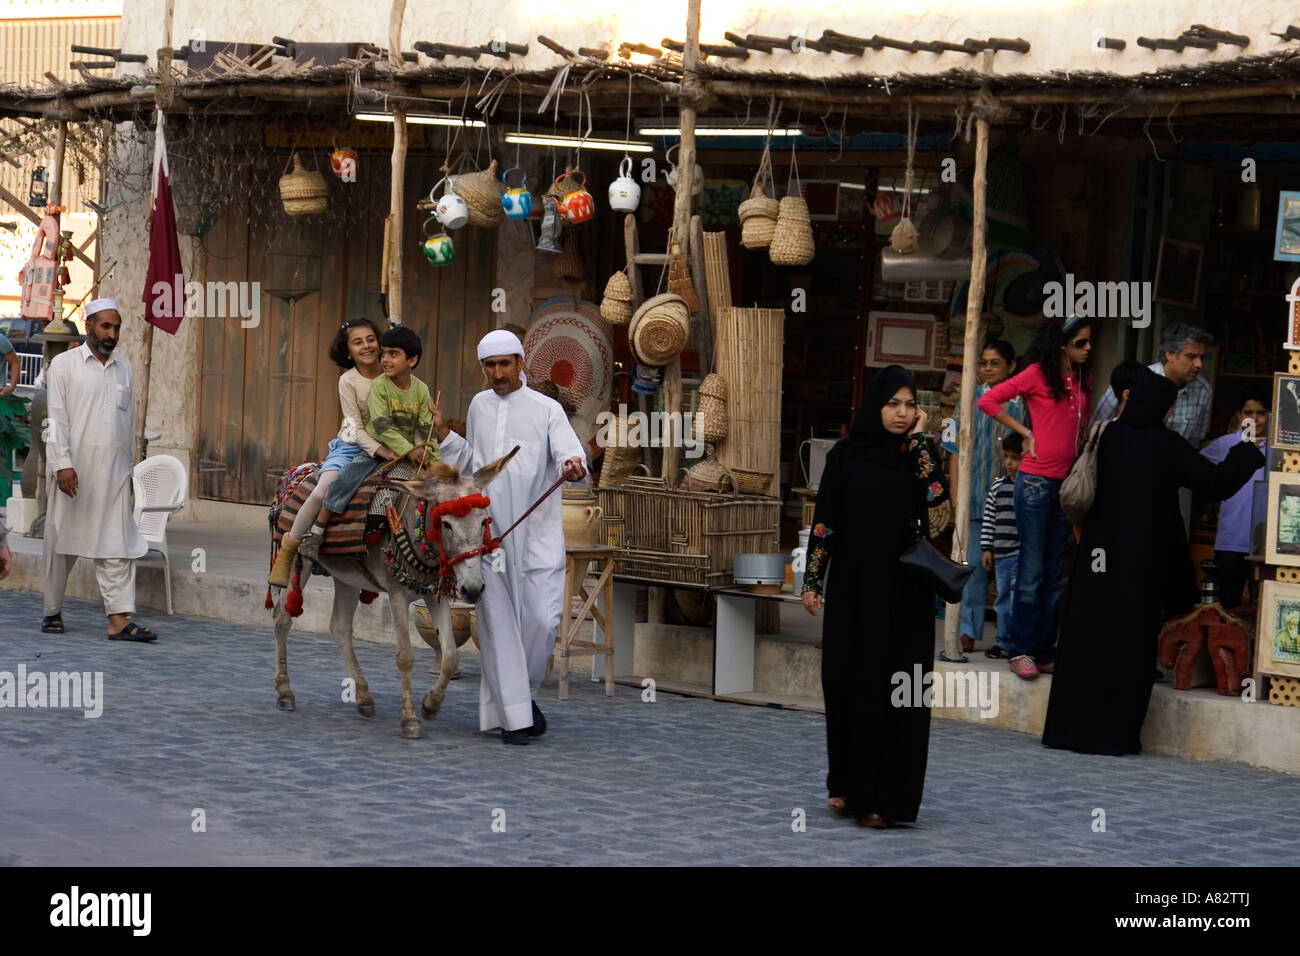 Qatar Doha Souk children on donkey Stock Photo